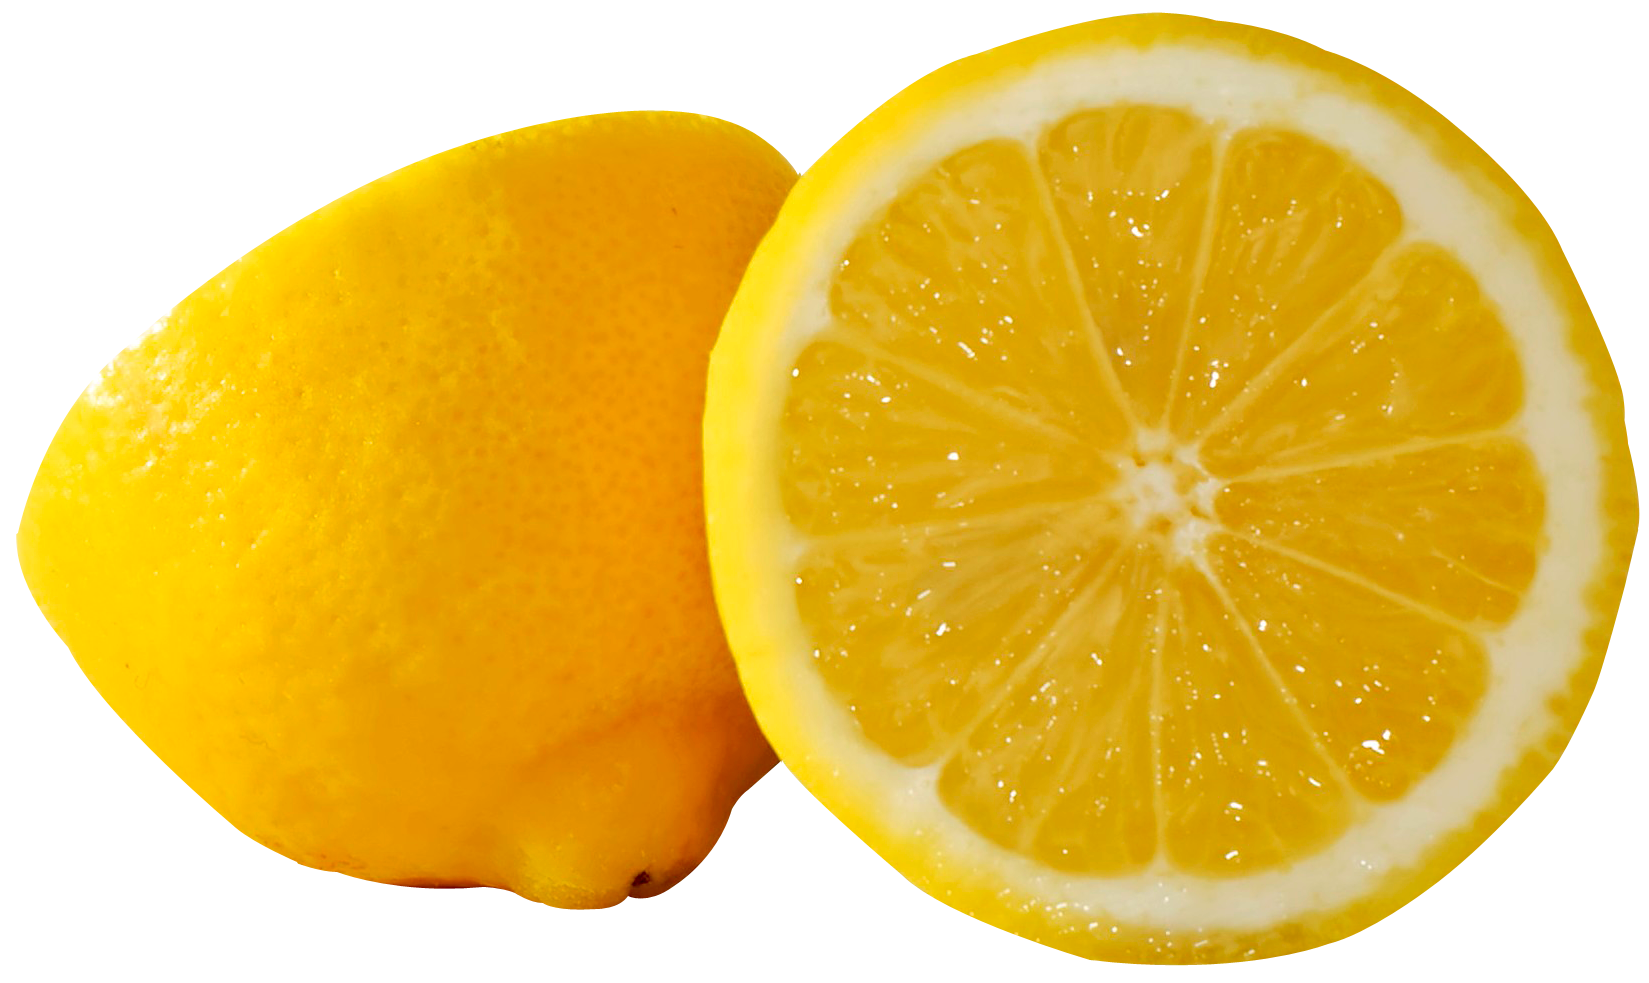 Organic Lemon Png image #3864